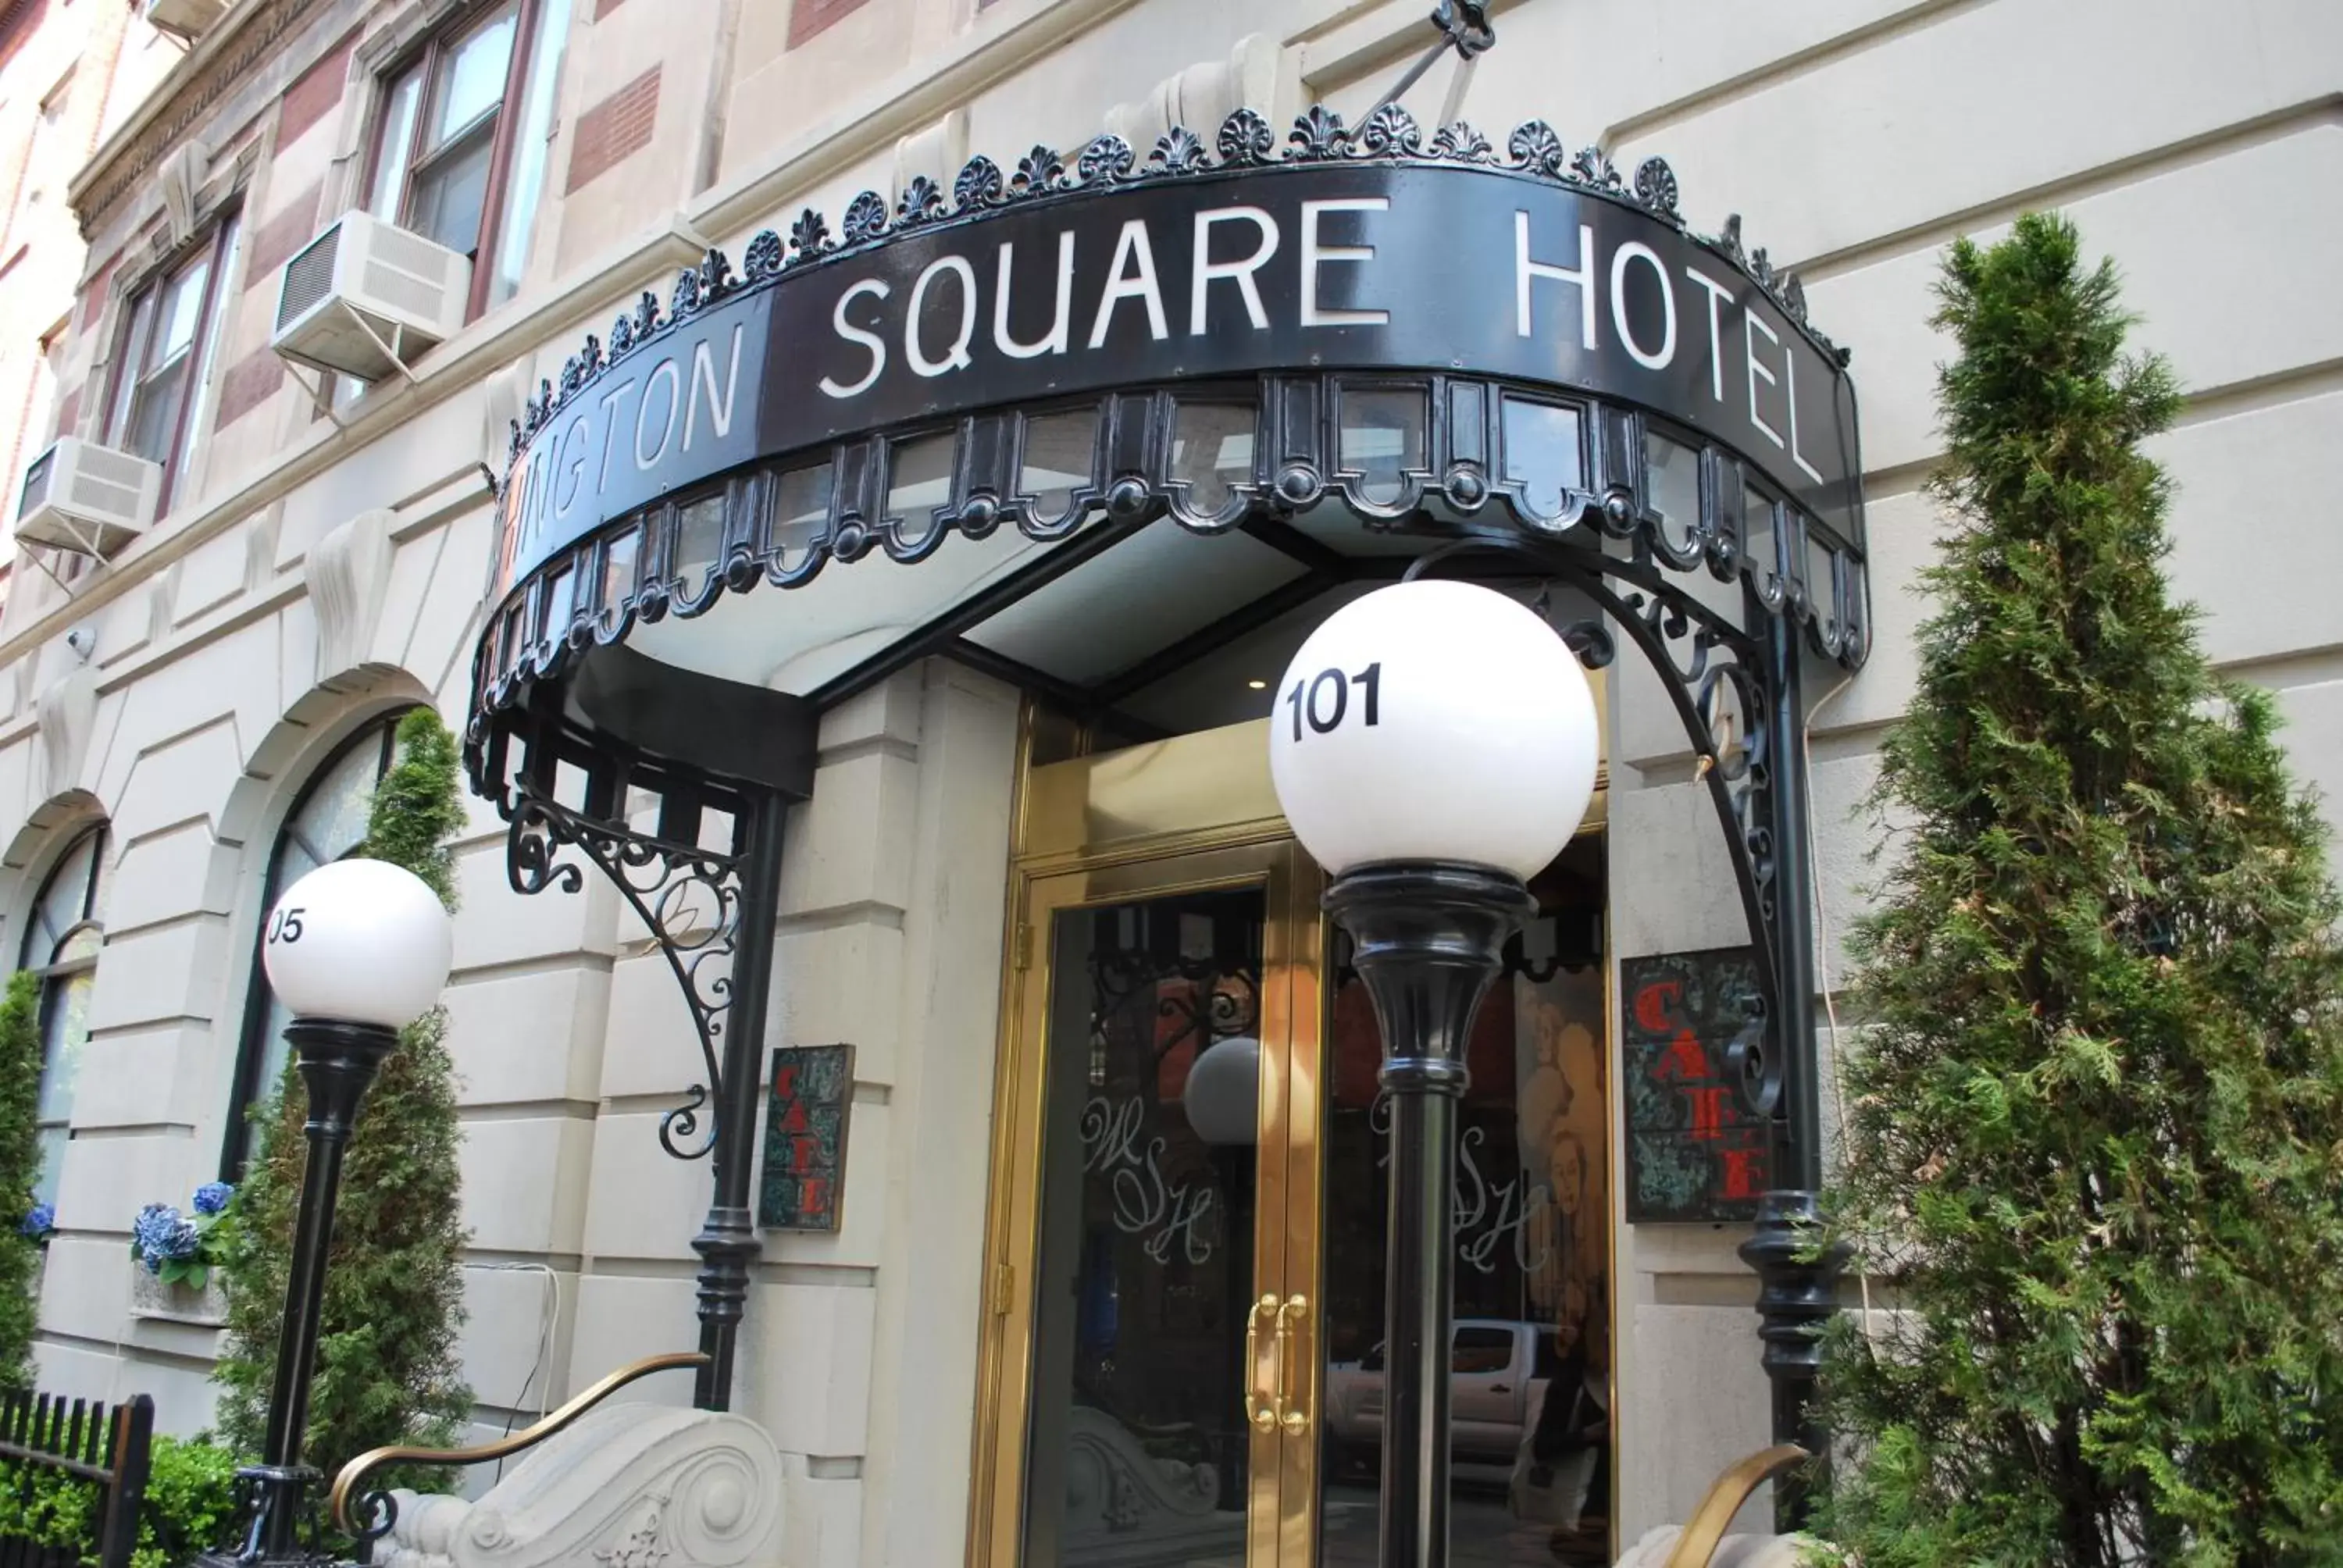 Facade/entrance in Washington Square Hotel